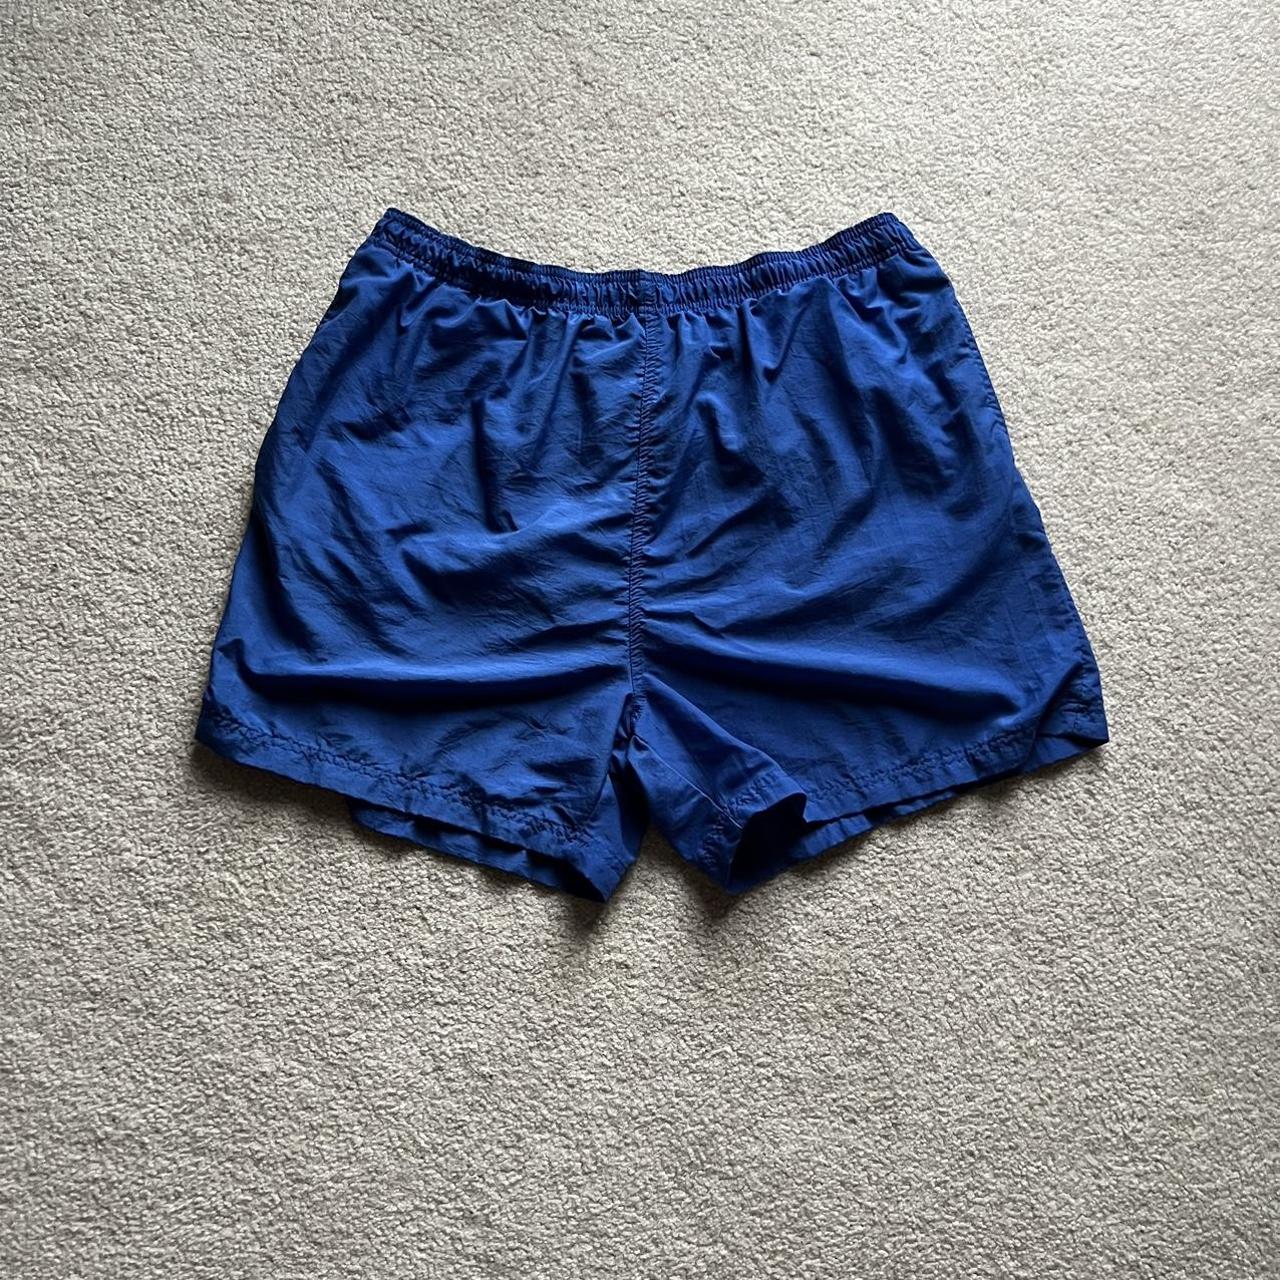 Acacia Swimwear Men's Blue and Navy Shorts